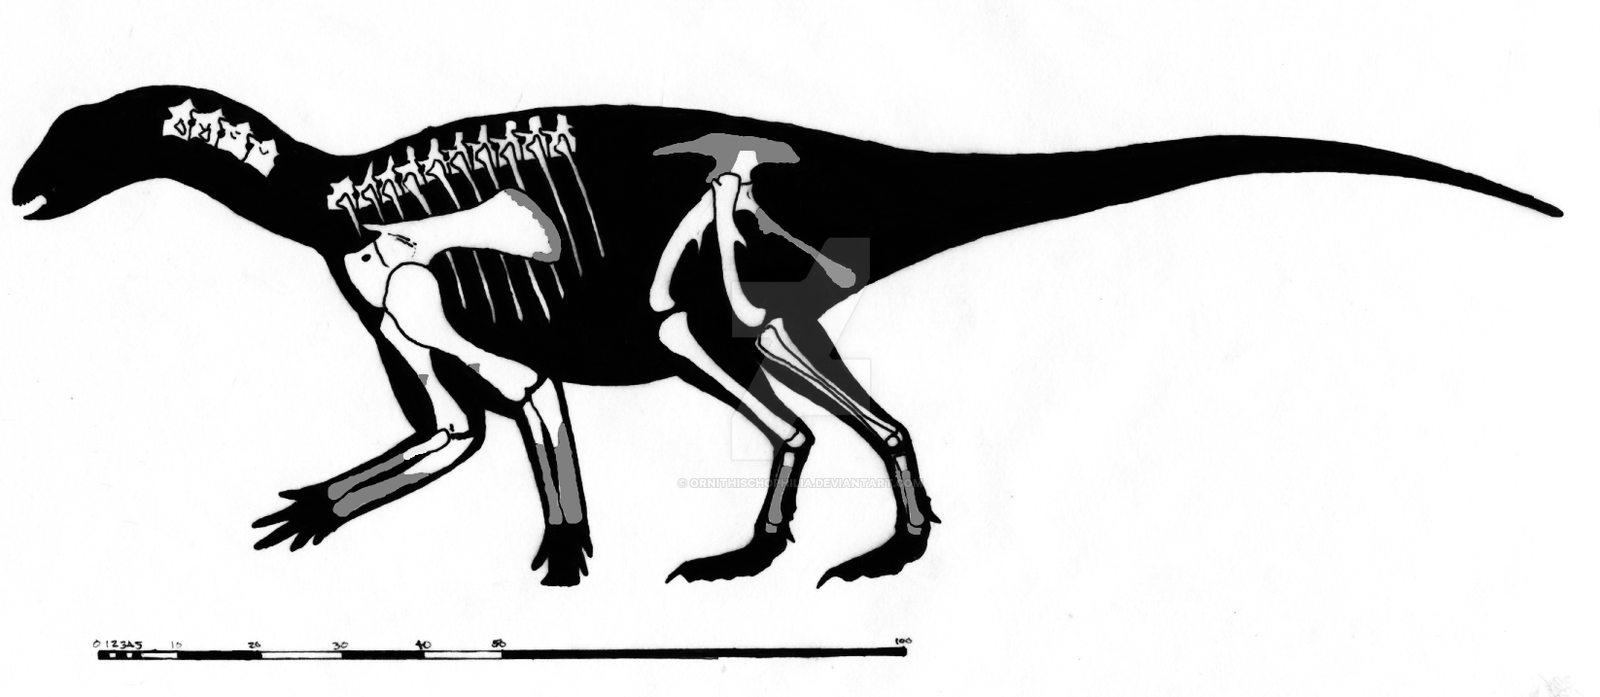 Koreanosaurus boseongensis Skeletal Restoration